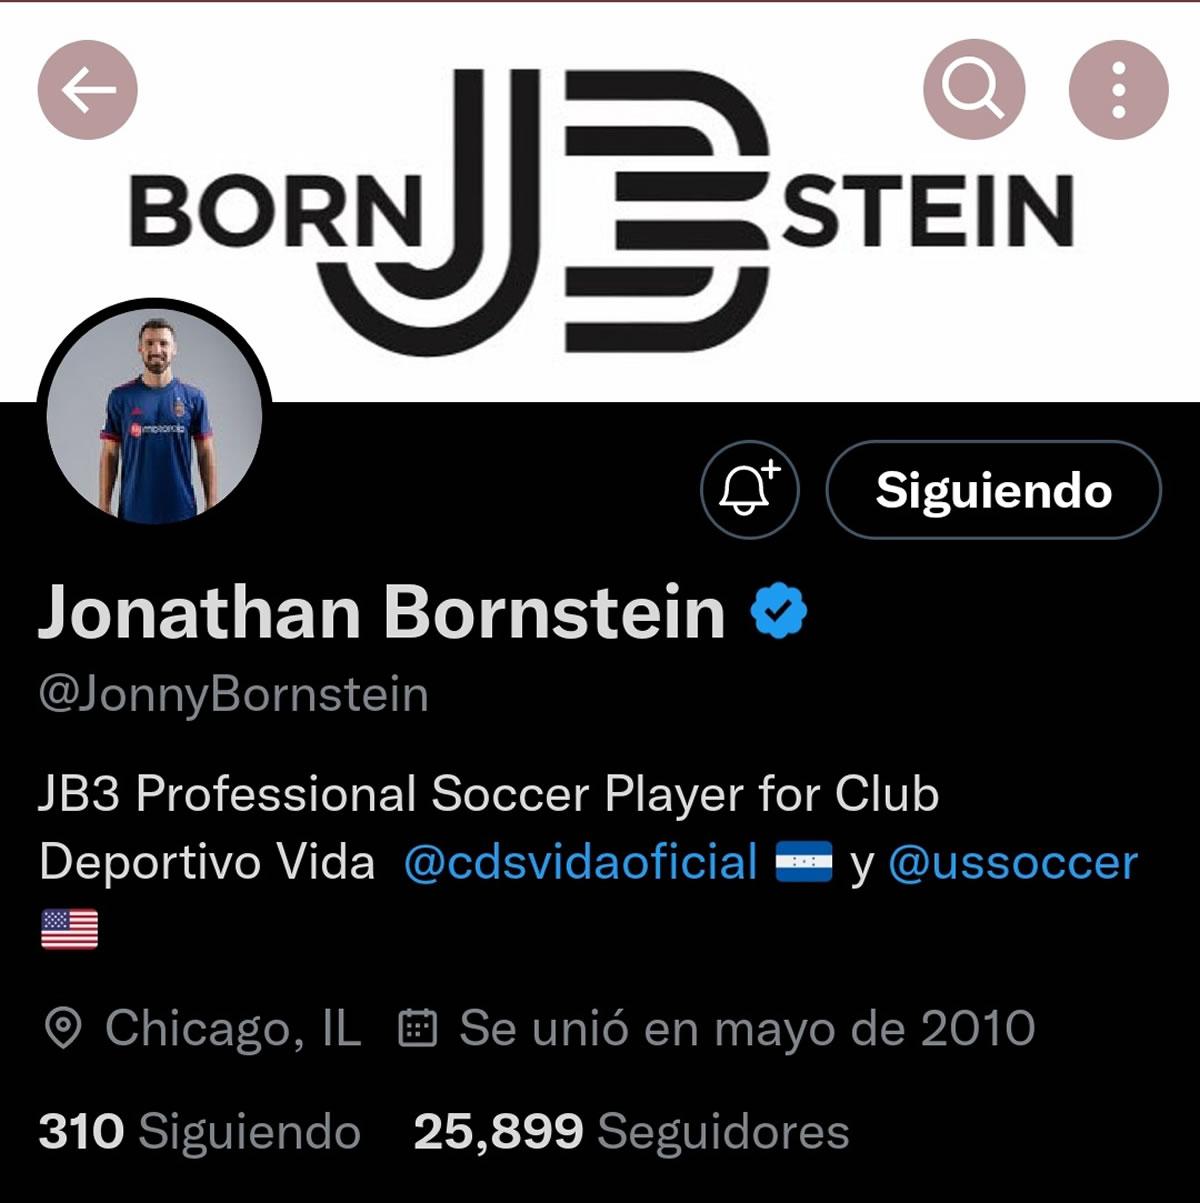 Jonathan Bornstein ya actualizó su información de perfil en su cuenta de Twitter.